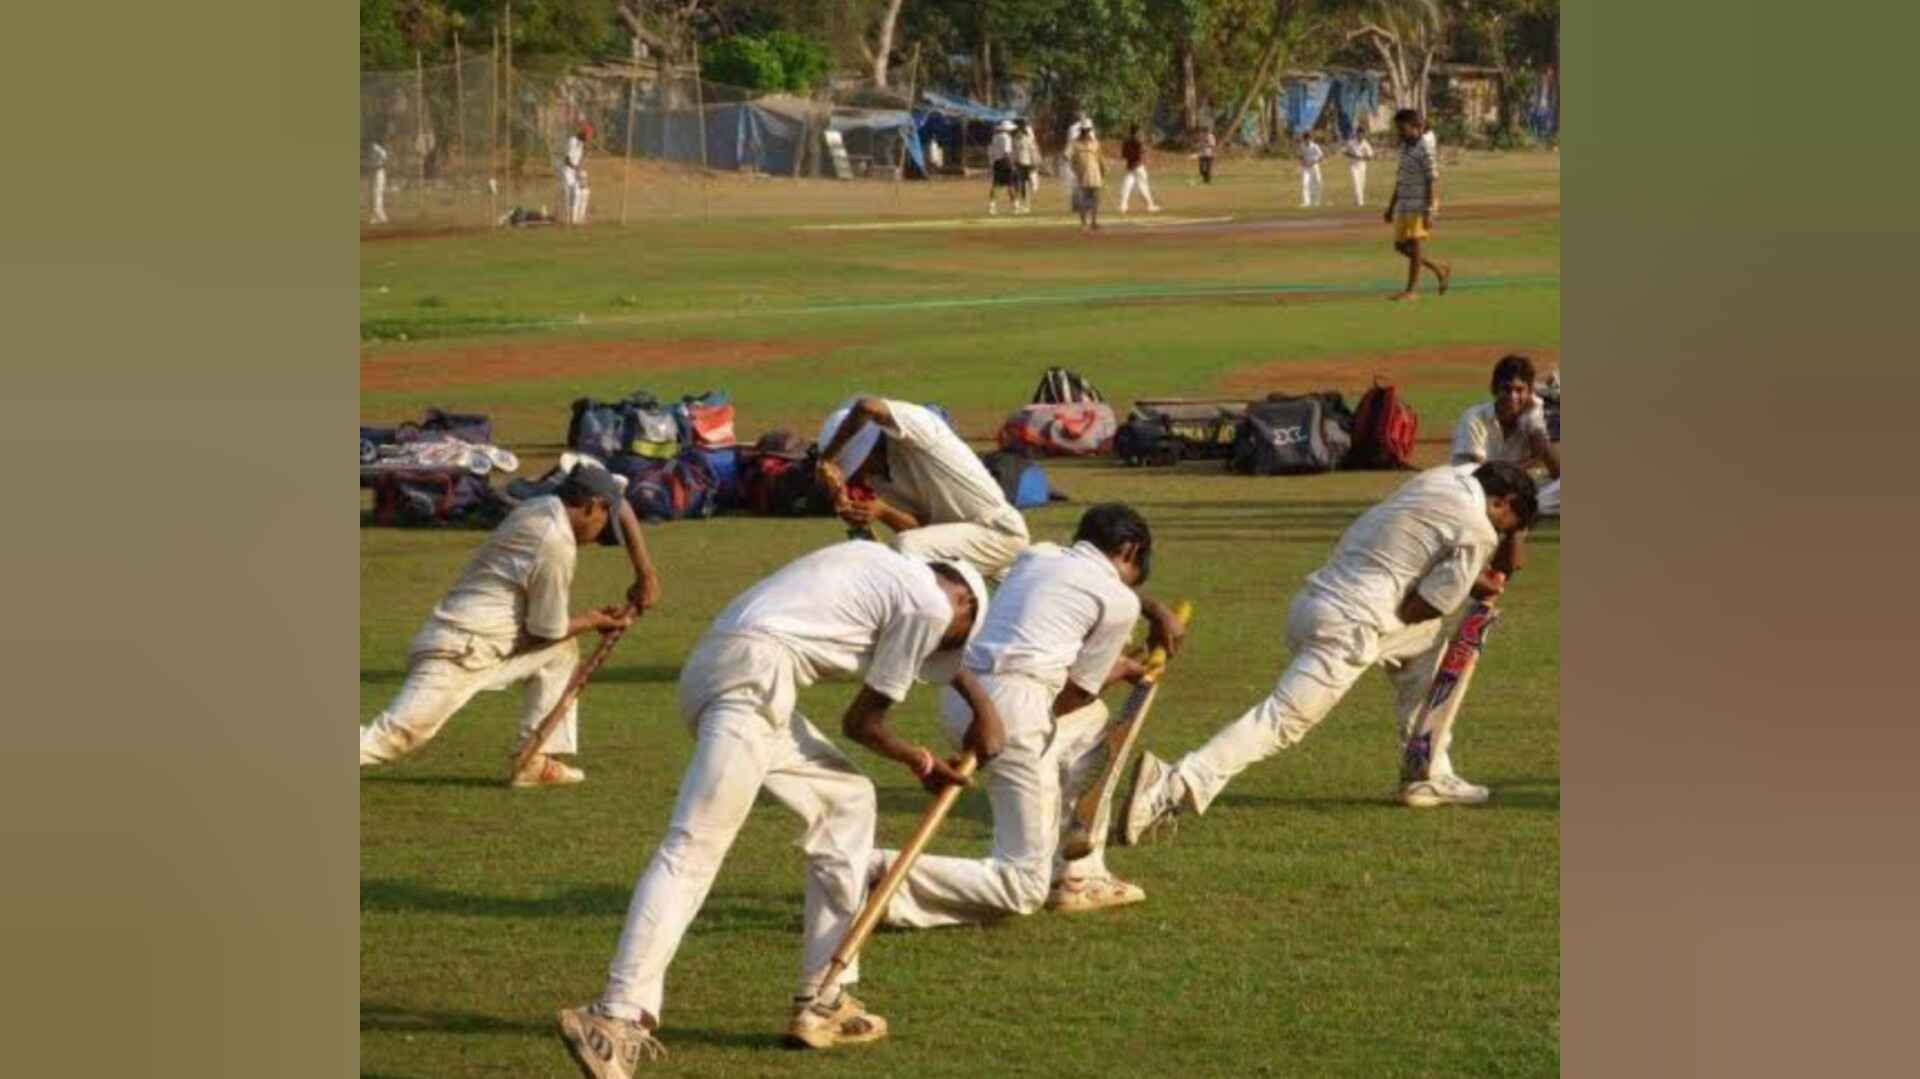 क्रिकेट कोच के खिलाफ छेड़छाड़ की शिकायत: मानवाधिकार पैनल ने केसीए से मांगा स्पष्टीकरण